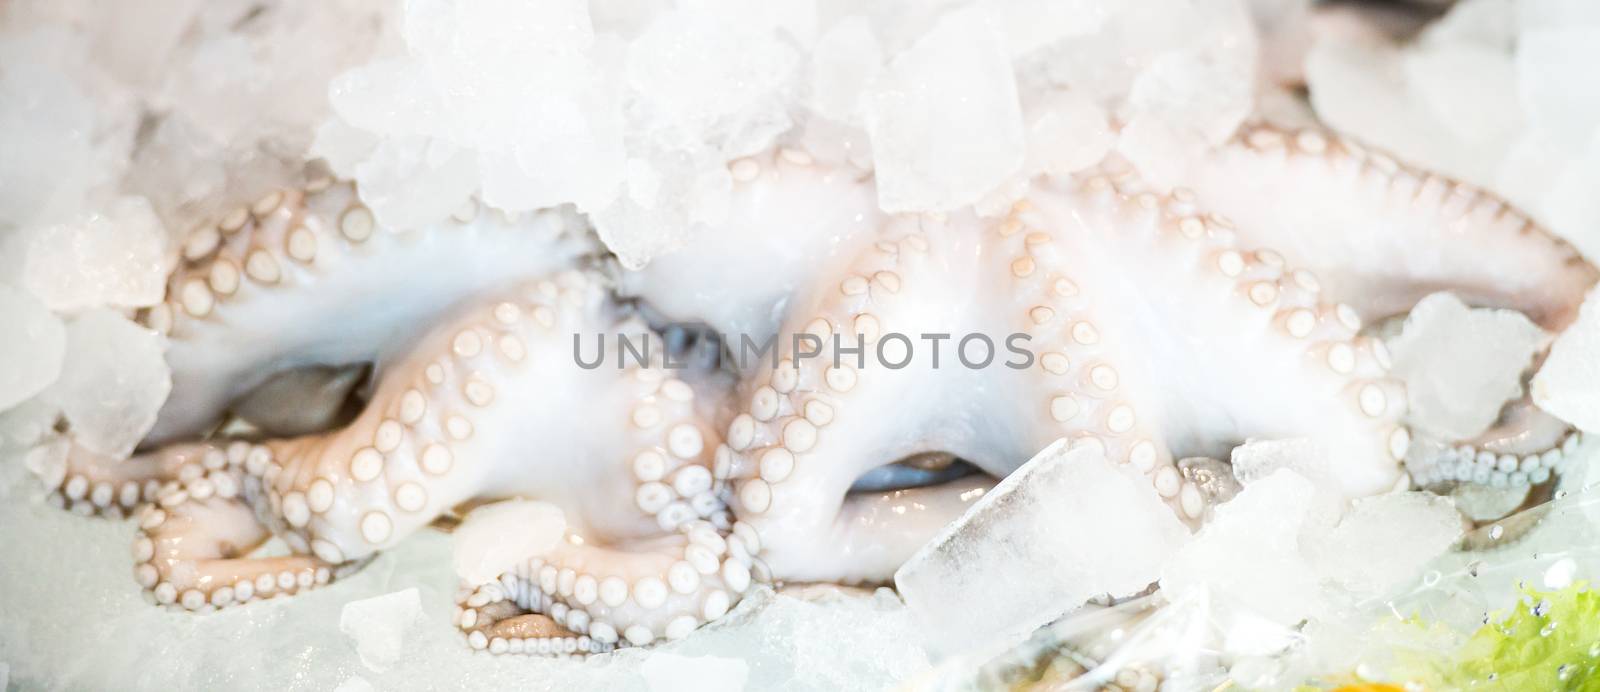 fresh octopus on ice by GekaSkr